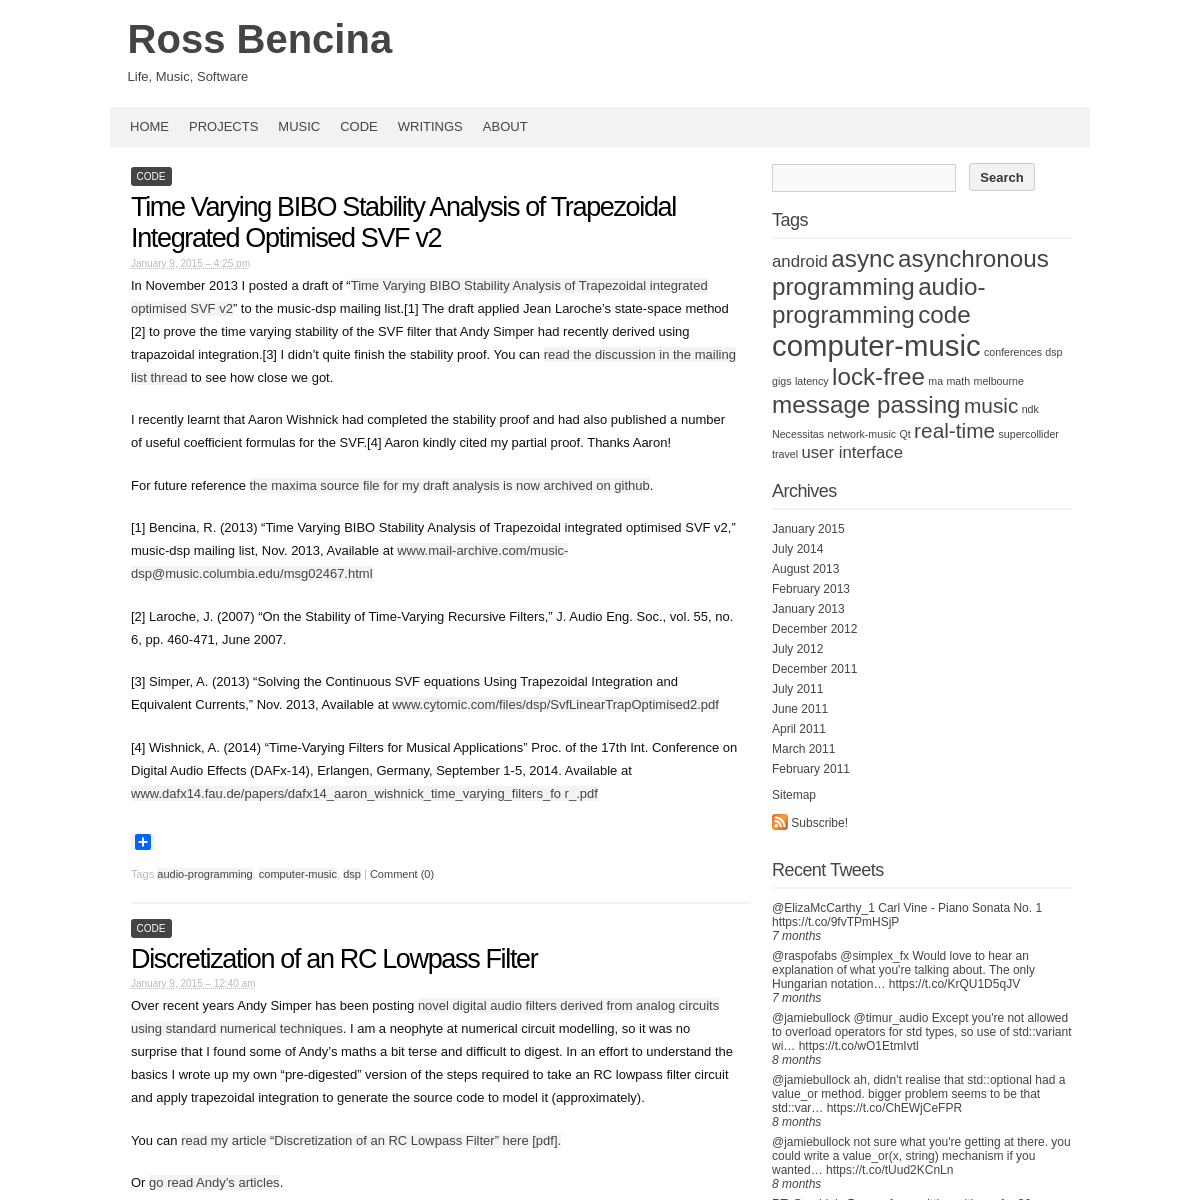 A complete backup of rossbencina.com